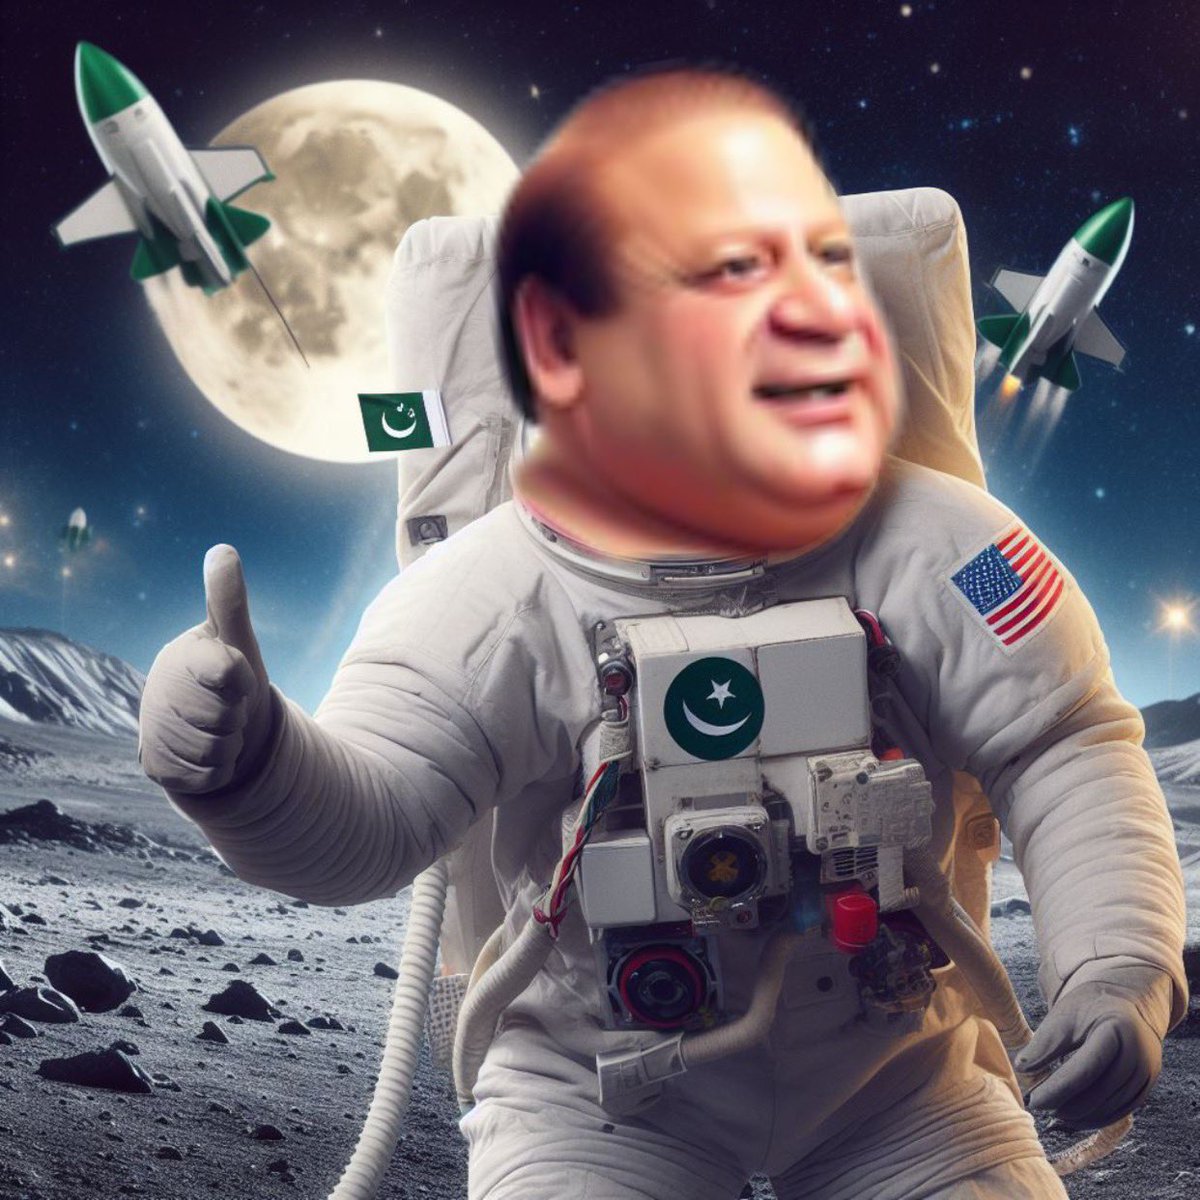 پاکستان بننے کا خواب دیکھنے کے بعد میاں سانپ نے اگلی رات چاند پر جانے کا خواب بھی دیکھا تھا بلآخر وہ خواب سچ ہو گیا 🚀🚀🚀🚀😂😂😂😂